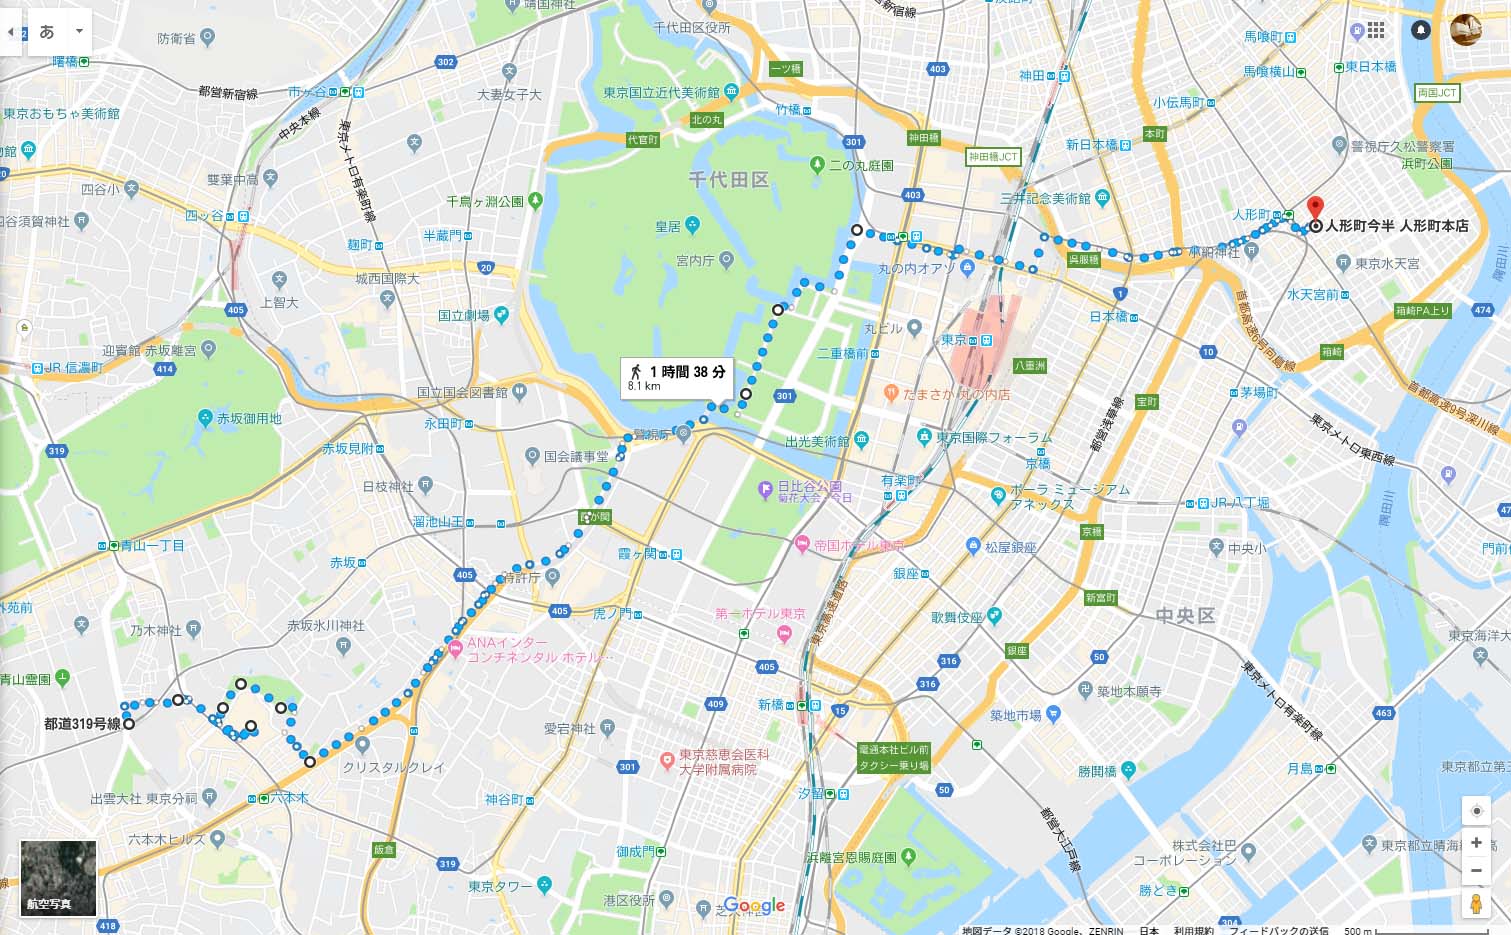 乃木坂から六本木を通り、国会議事堂前、皇居と歩き人形町まで